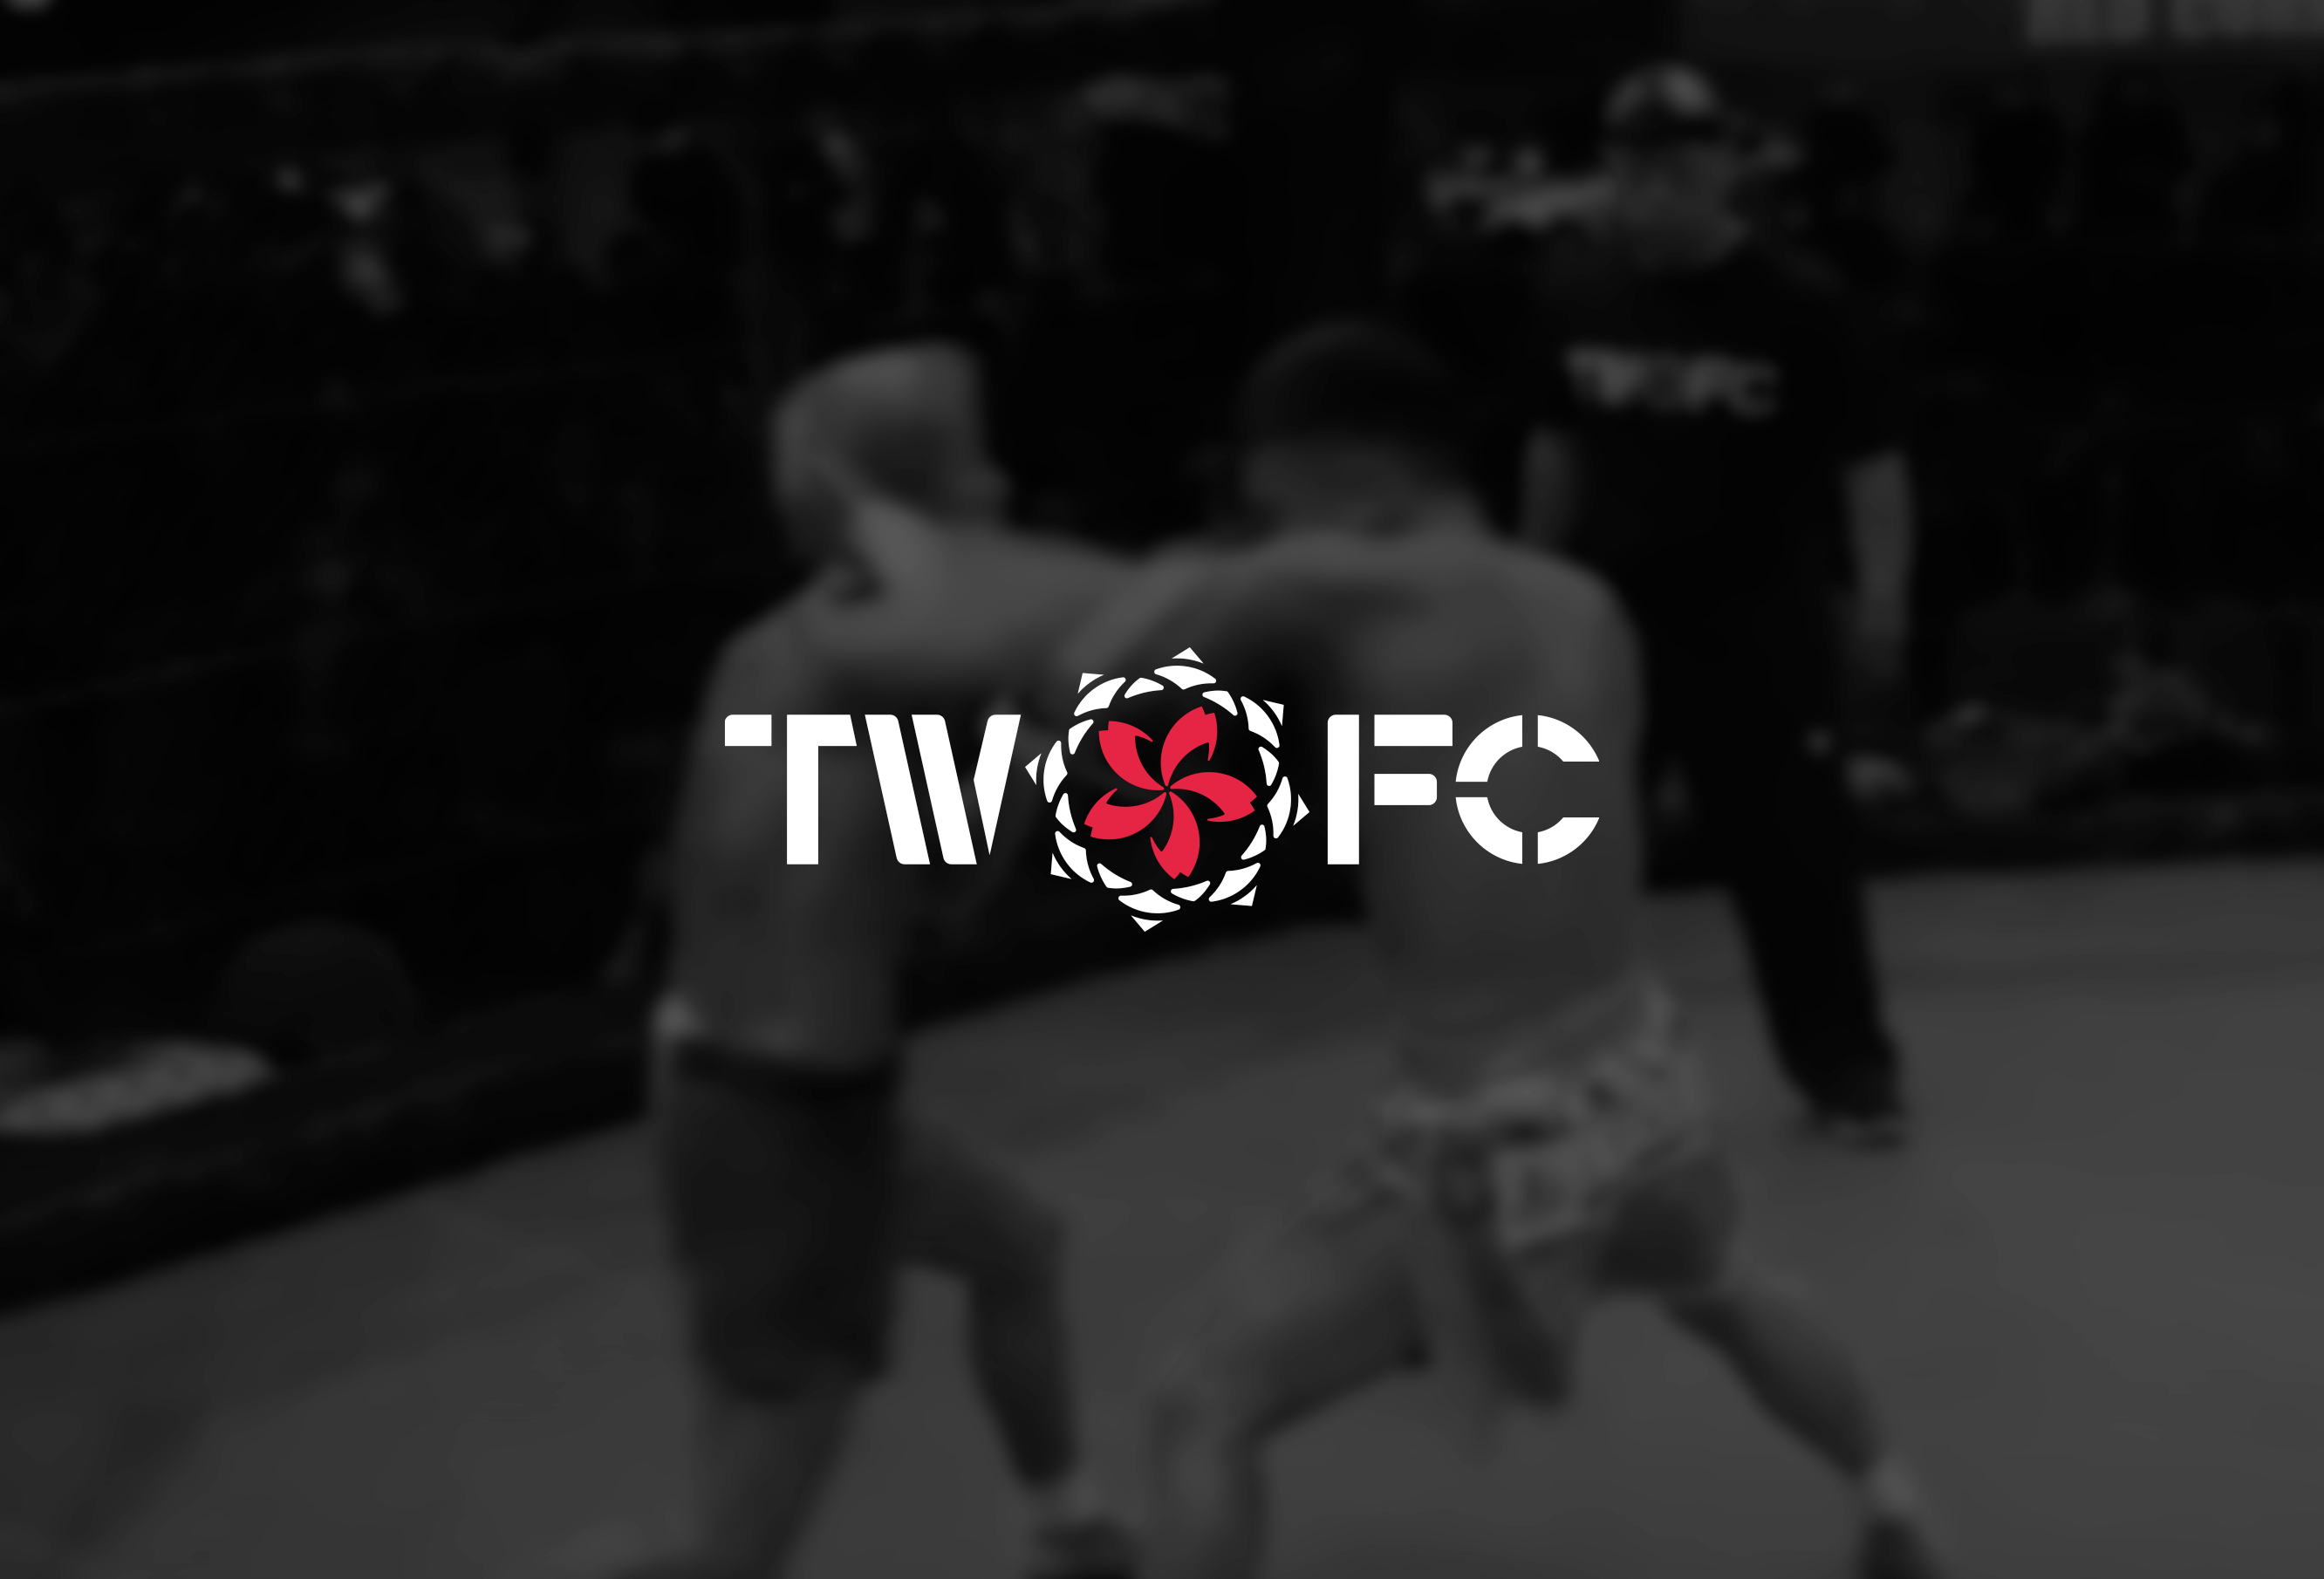 TWO FC logo